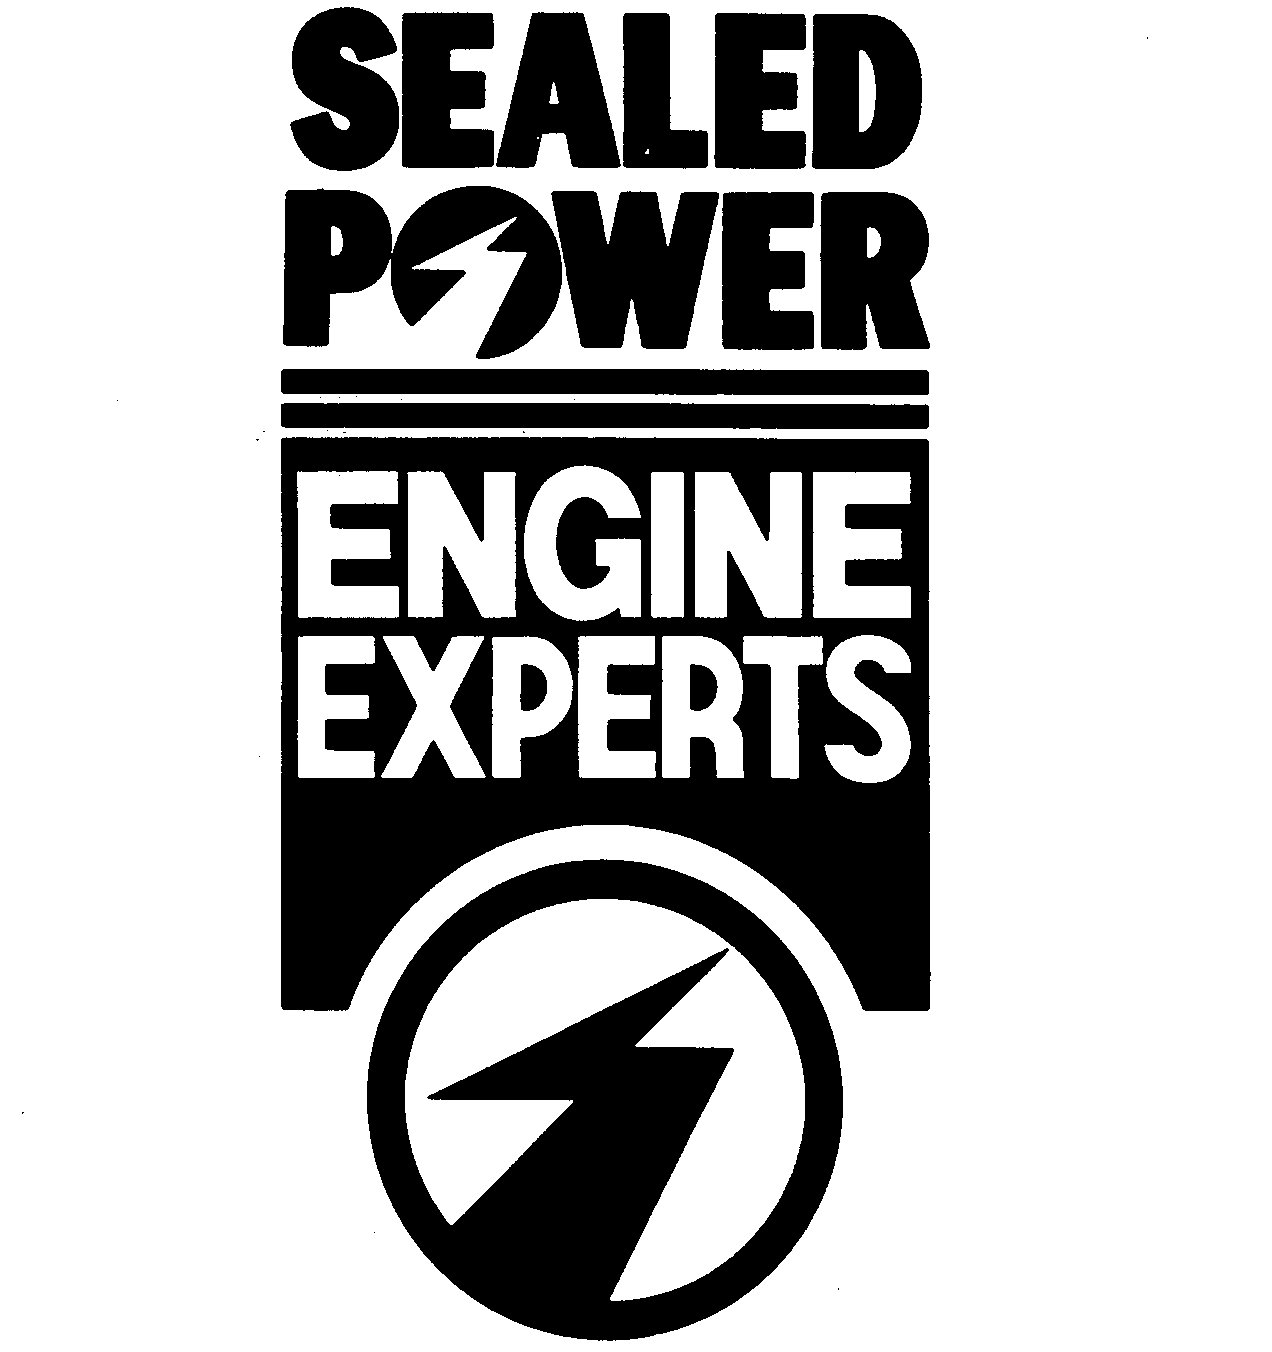  SEALED POWER ENGINE EXPERTS